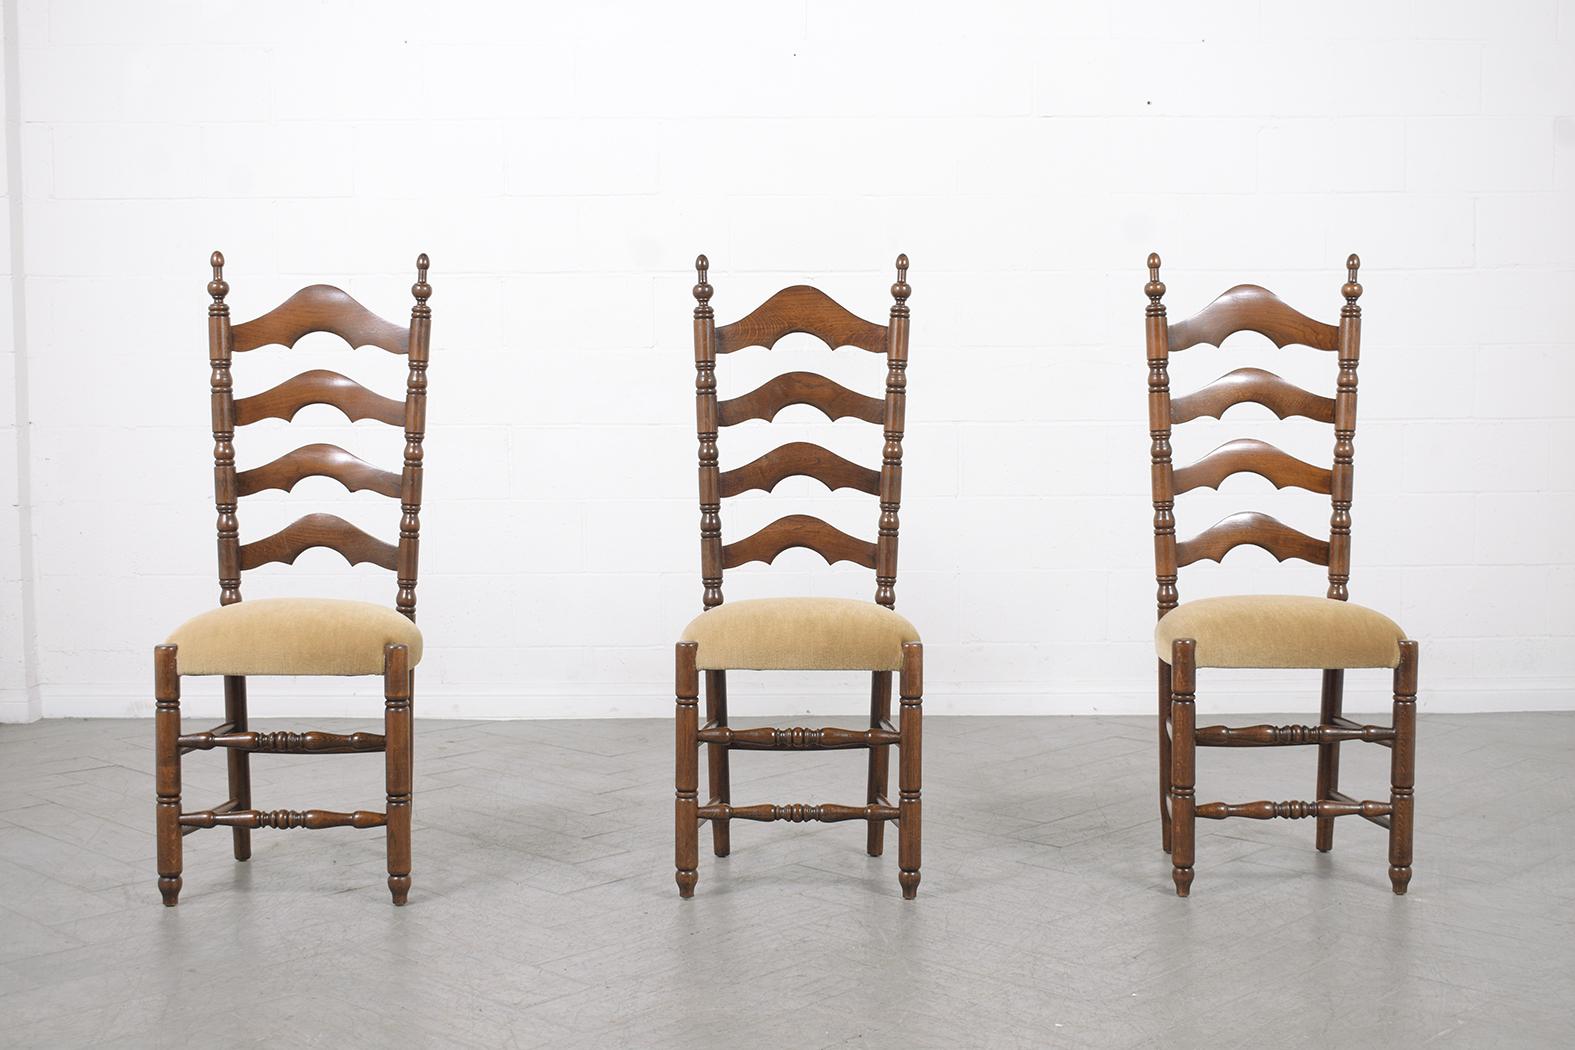 Nous vous présentons notre exceptionnel ensemble de six chaises de salle à manger de style provincial français, datant des années 1900. Ces chaises ont été méticuleusement restaurées et retapissées par notre équipe interne d'artisans experts, ce qui